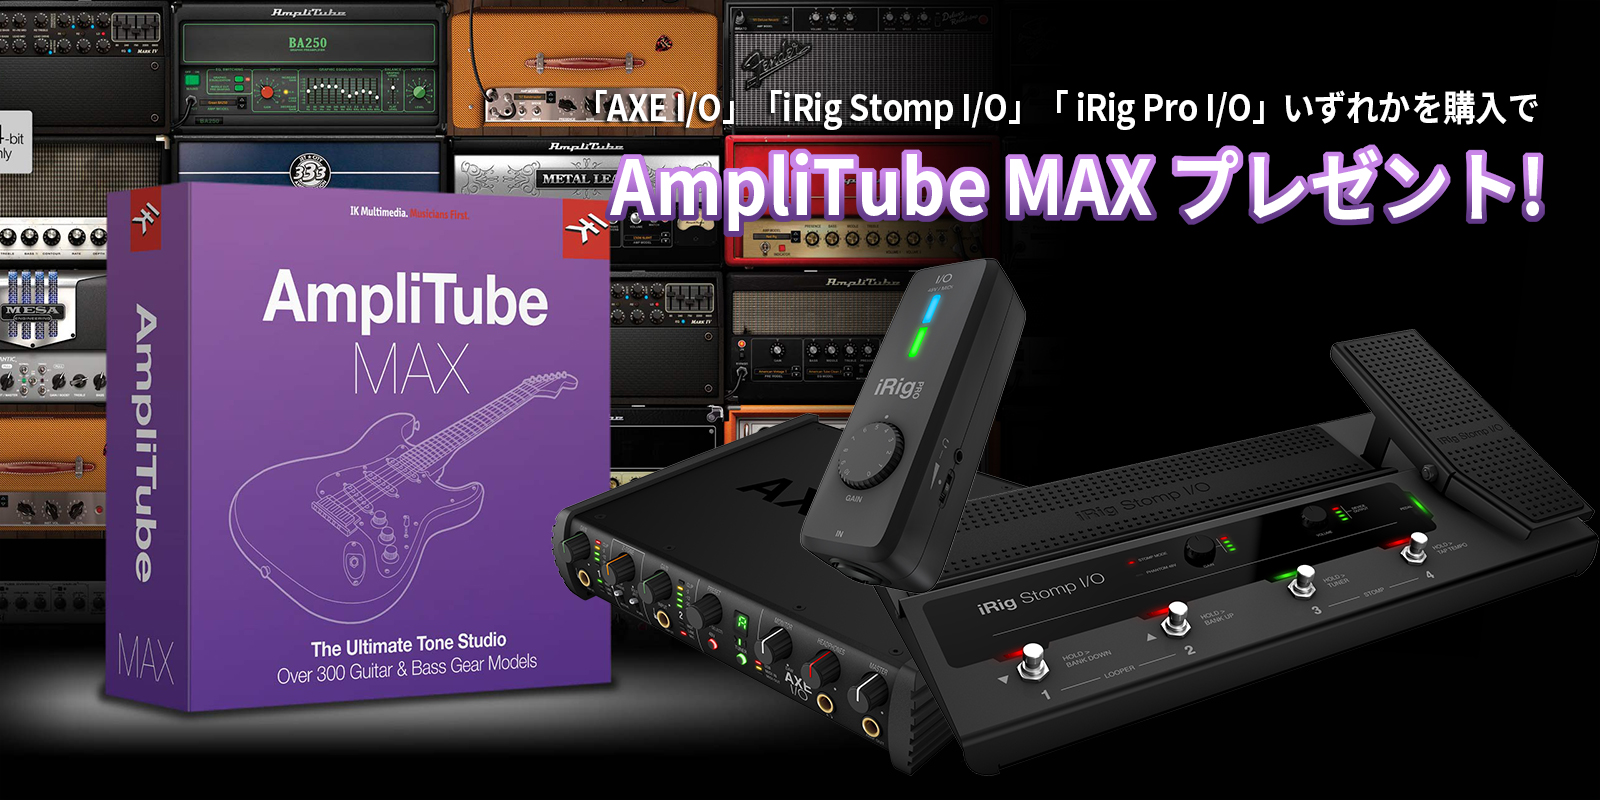 IK Multimedia ( アイケーマルチメディア ) が期間中に対象製品を購入/登録すると、「AmpliTube MAX」をプレゼントするキャンペーンを開催。 「AmpliTube MAX」は、ギターやベースアンプ、コンパクト・エフェクターやラック・エフェクトとった総計300機種以上ものギアを […]